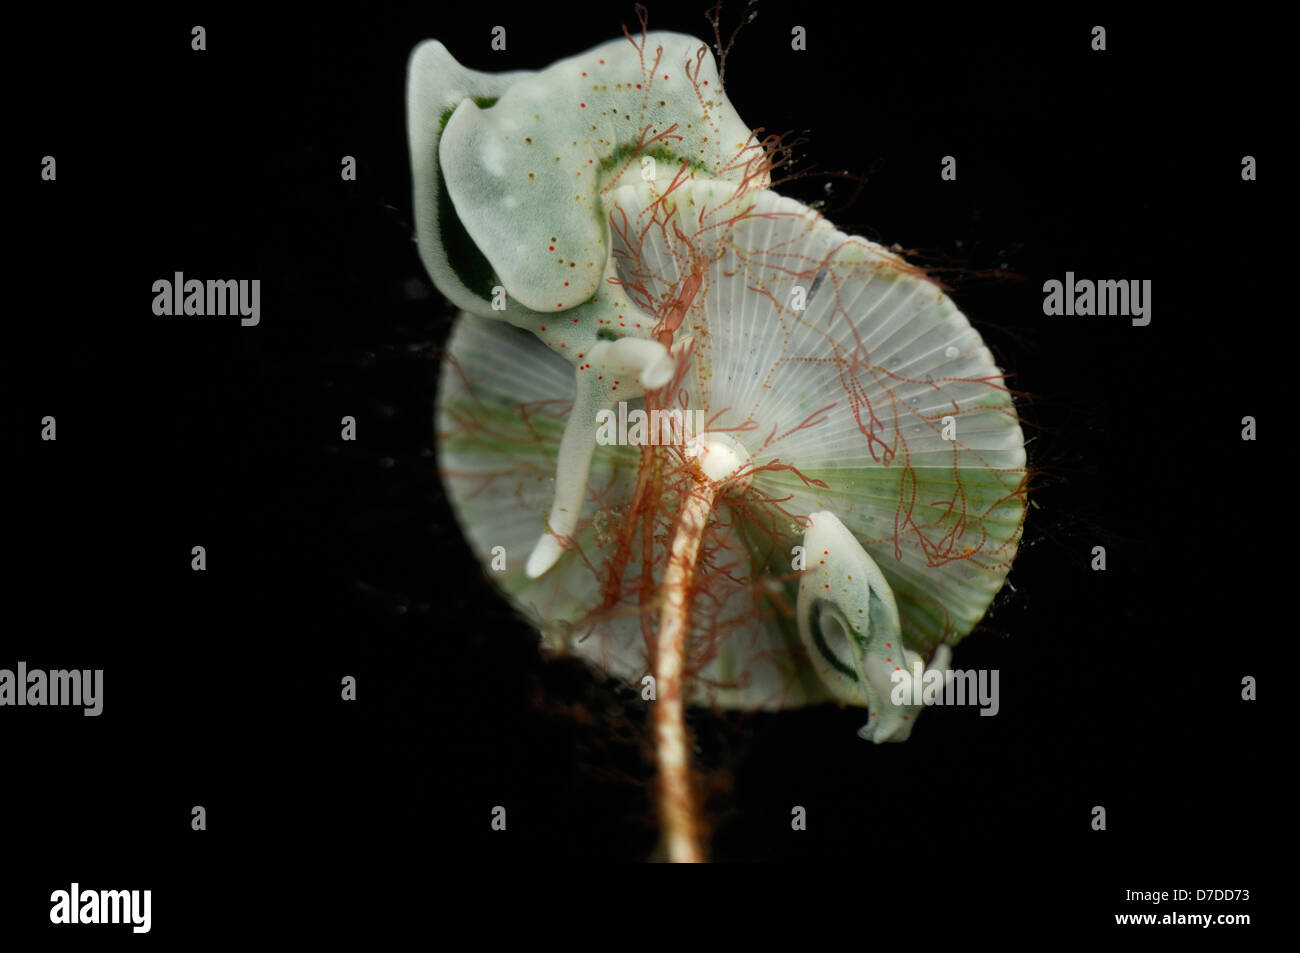 Sea Slug on its Foodplant Mermaids Wine Glass Alga, Elysia viridis, Susac, Adriatic Sea, Croatia Stock Photo